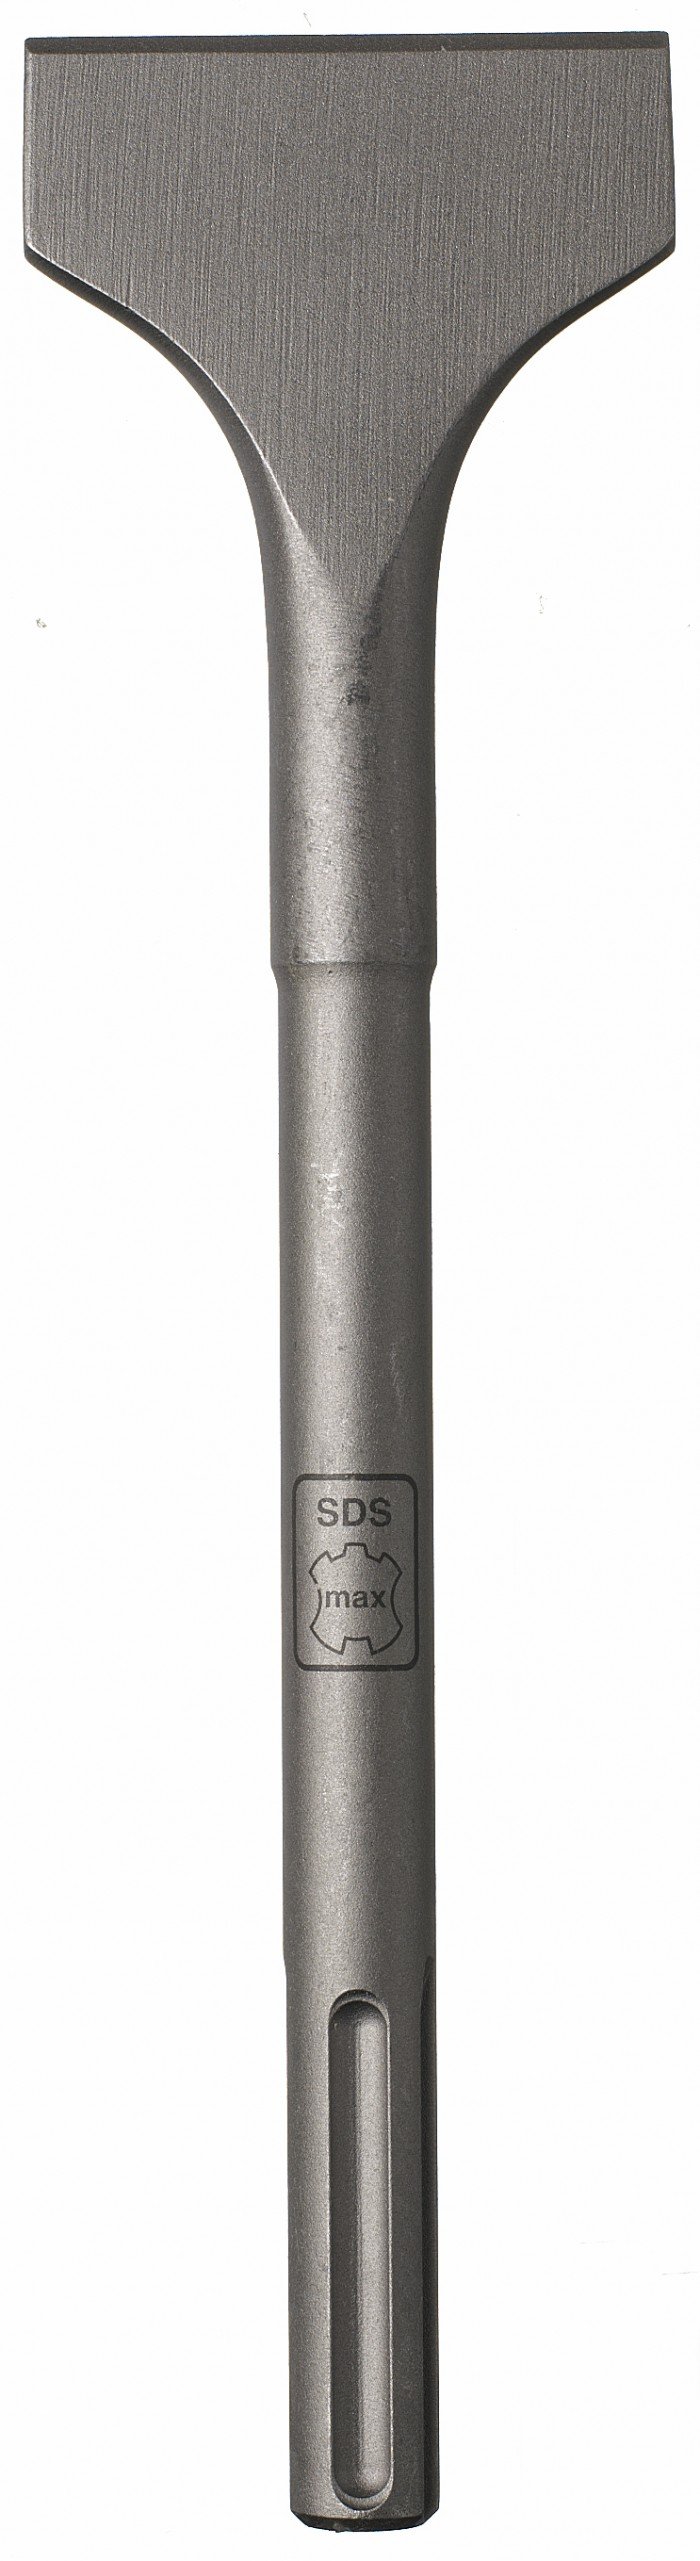 Dalta Irwin SDS-MAX 115x350mm - 10502190